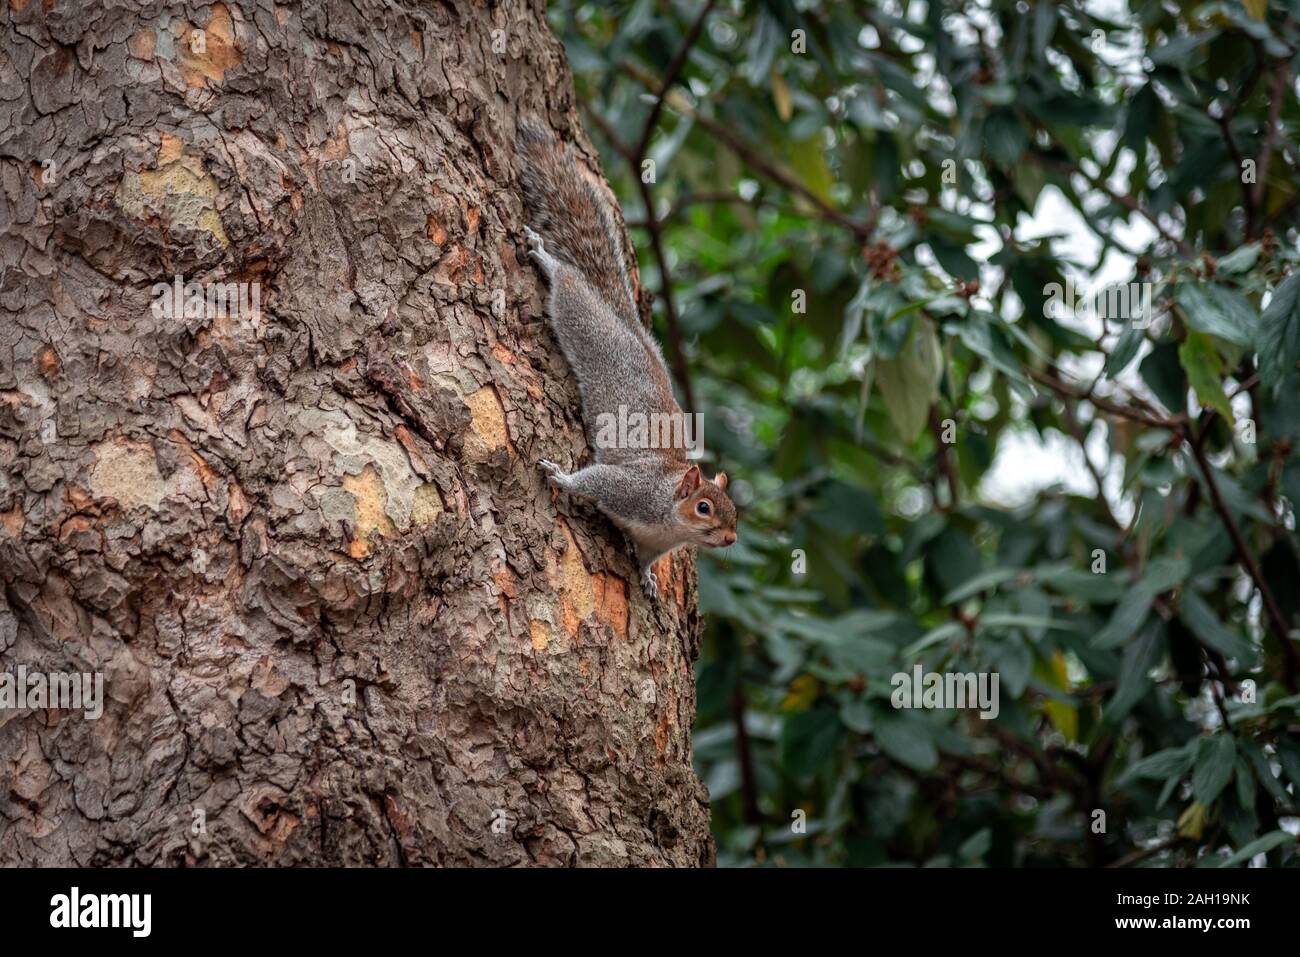 Drôle et adorable écureuil grimper sur un arbre alors que la recherche de nourriture. Banque D'Images